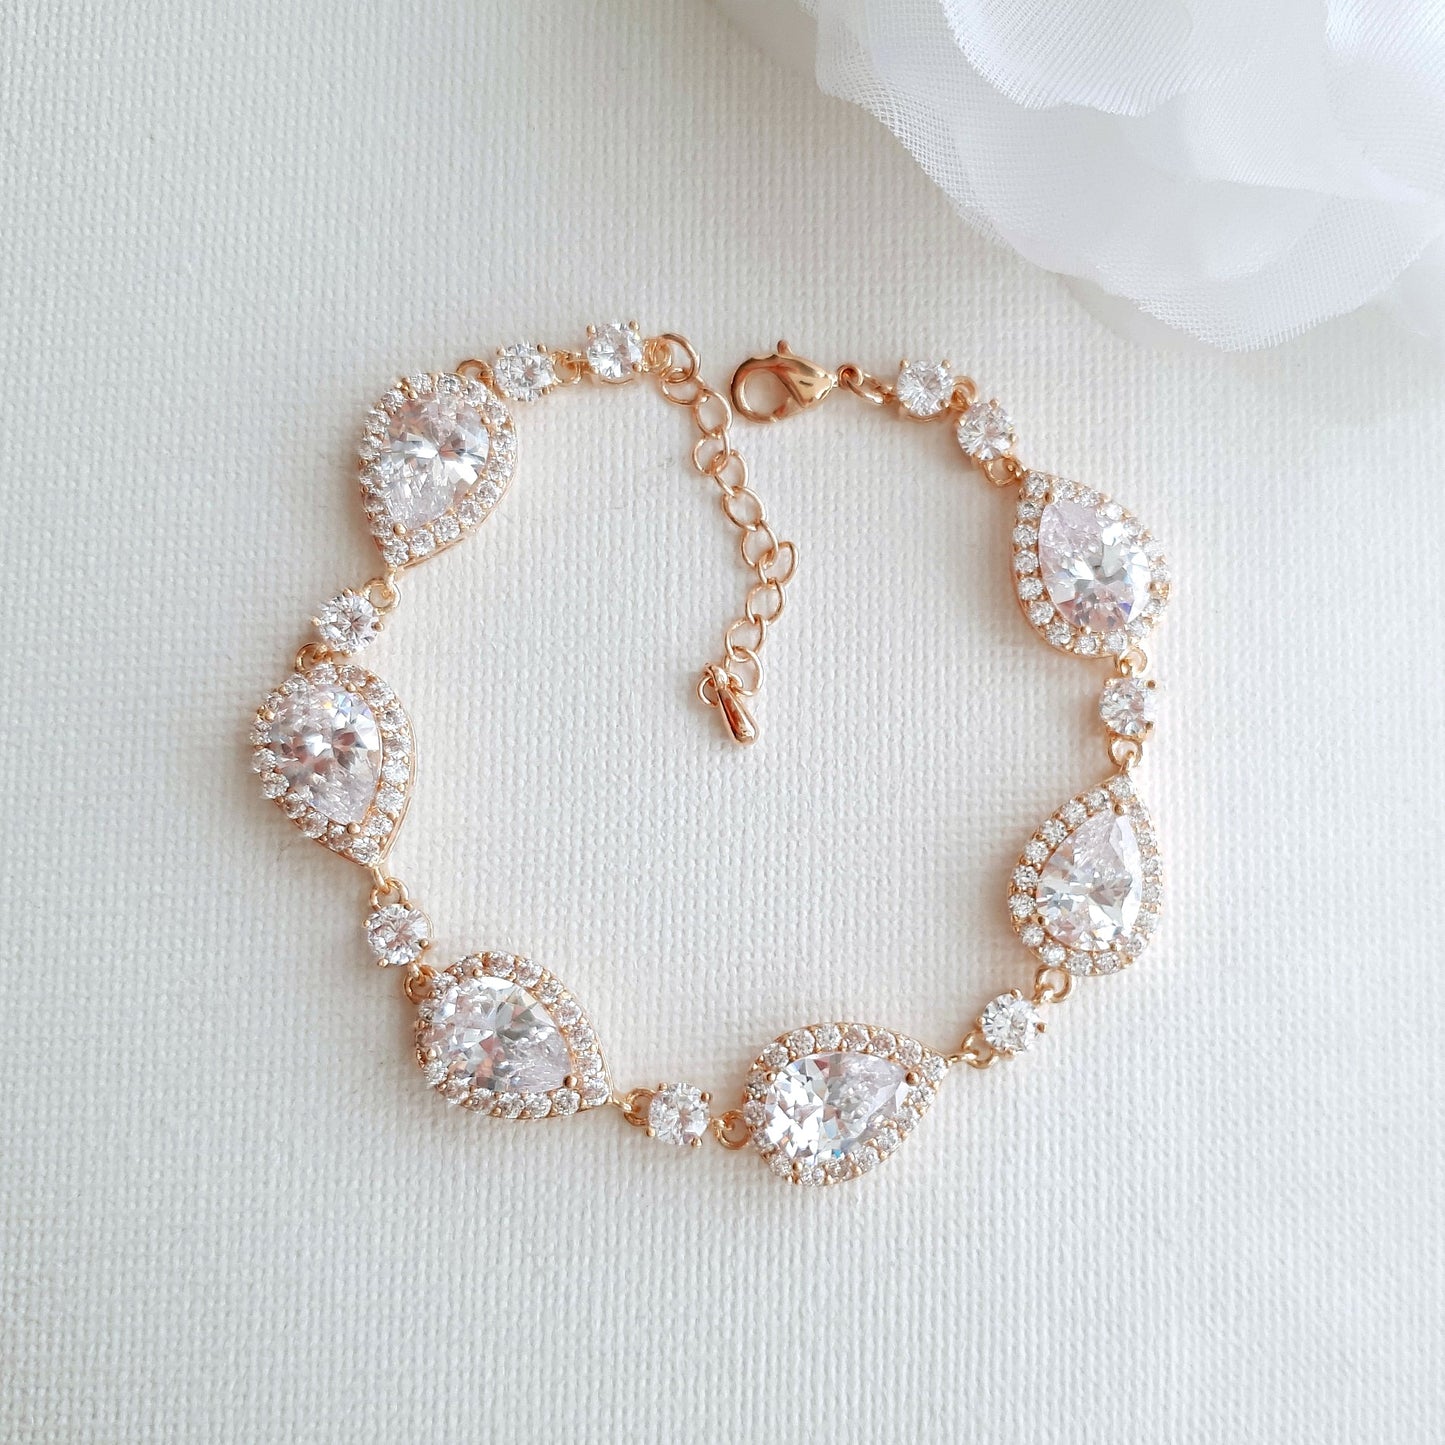 Crystal Bracelet in Rose Gold for Wedding Day-Emma